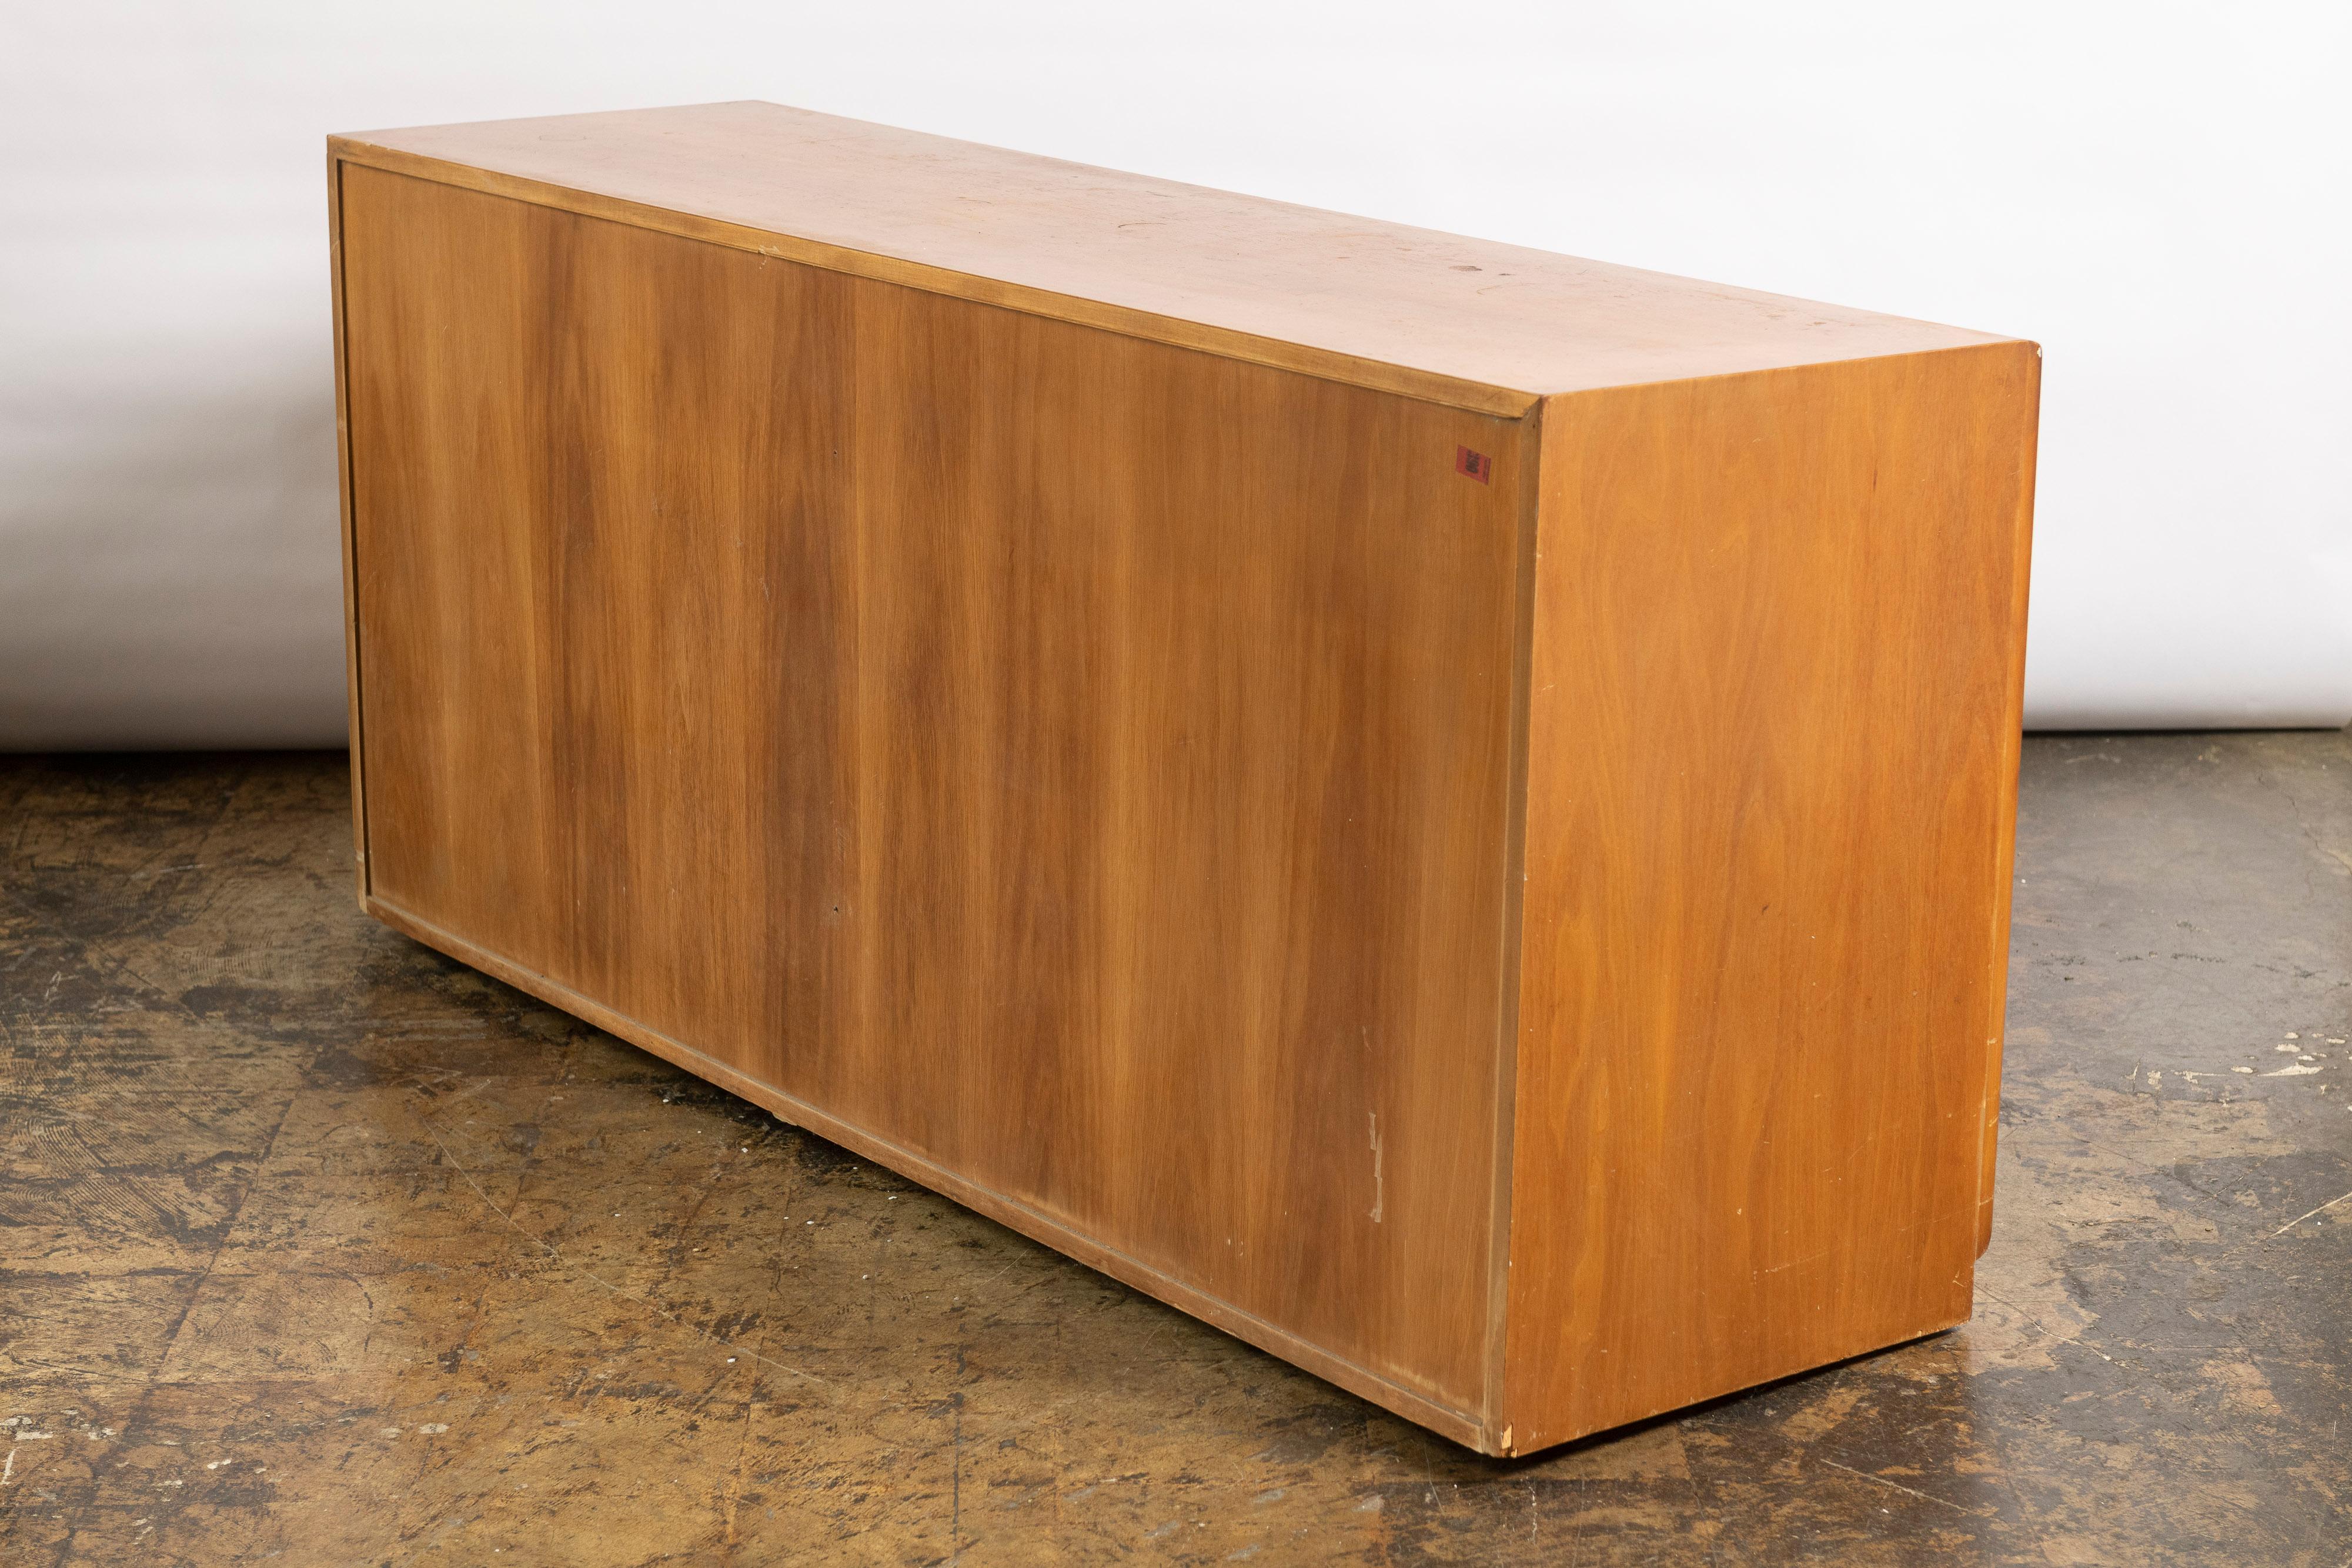 Großartige Kommode mit sechs Schubladen, entworfen von T.H. Robsjohn Gibbings für Widdicomb Furniture aus Teakholz. Die Kommode verfügt über zwei Reihen mit je drei Schubladen, einschließlich Unterteilungen in einigen Schubladen, und bietet so